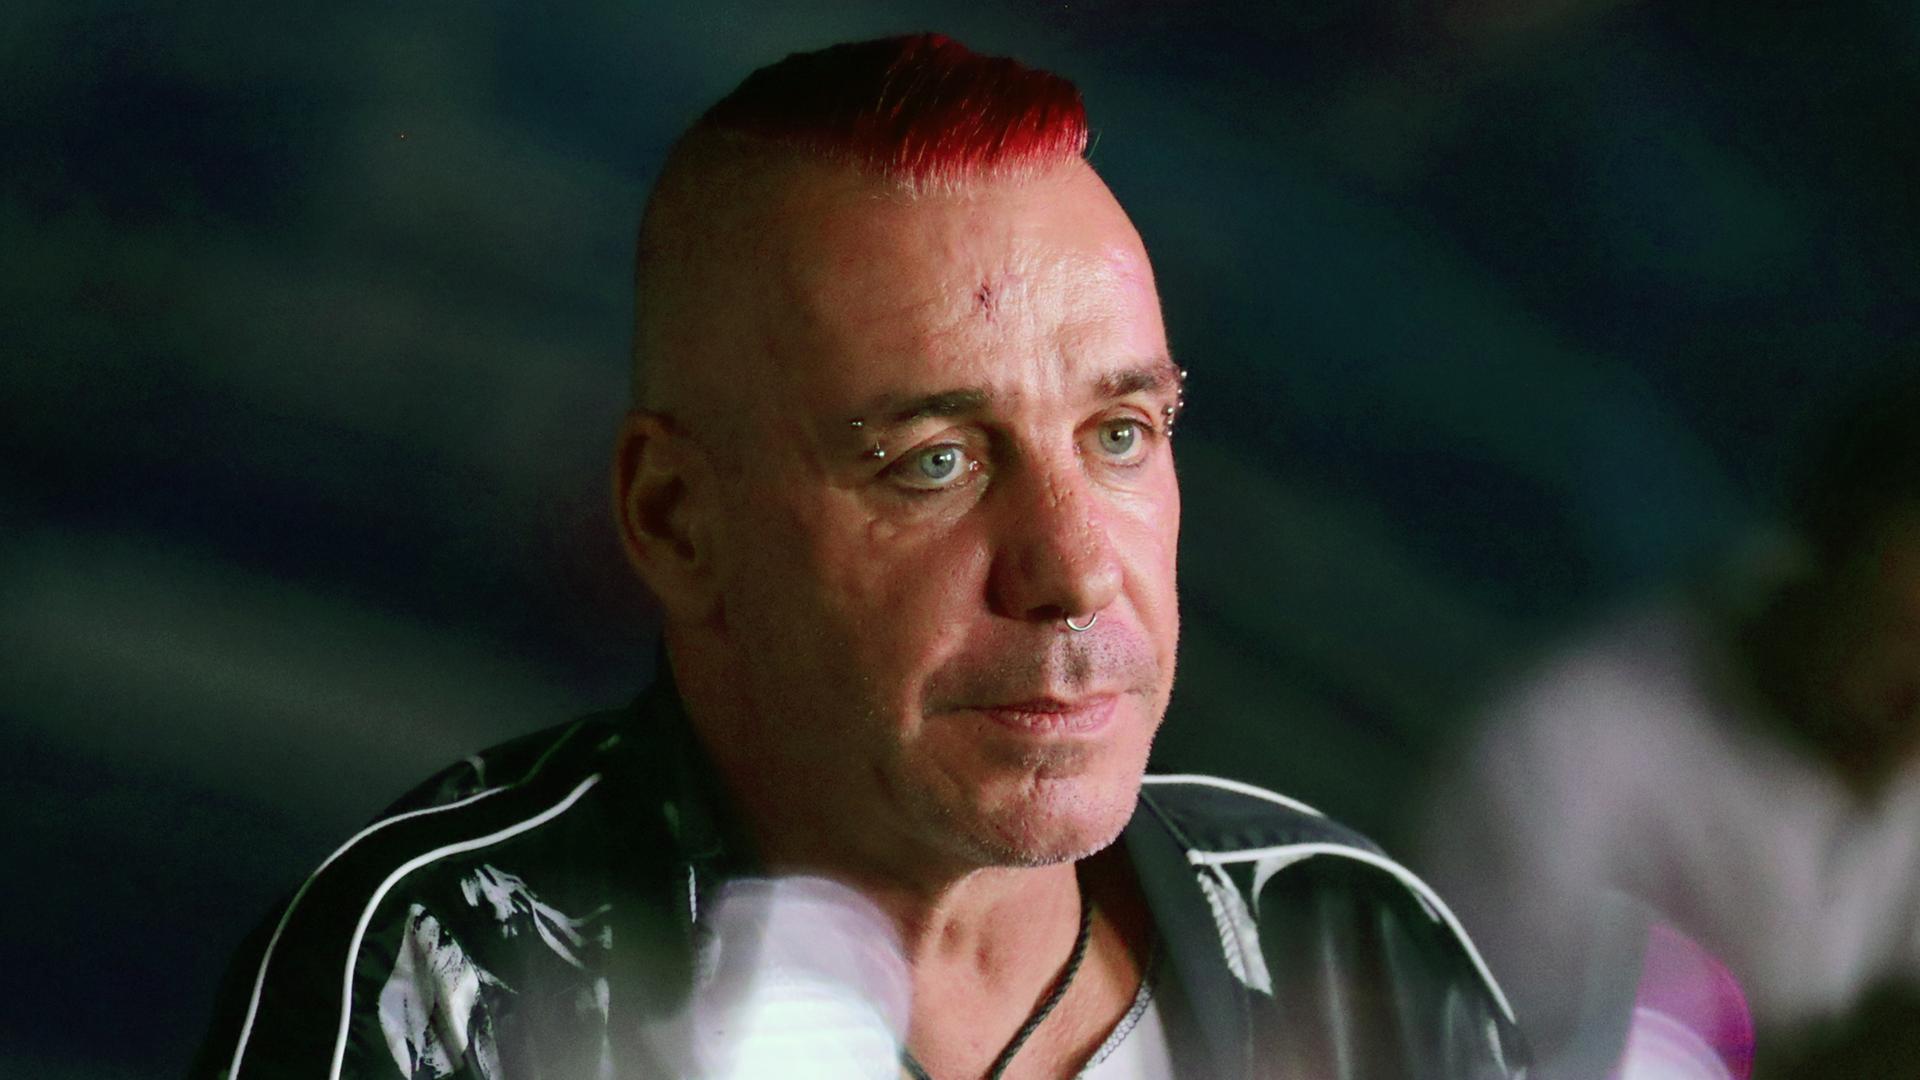 Till Lindemann trägt diverse Gesichtspiercing und pink gefärbte Haare